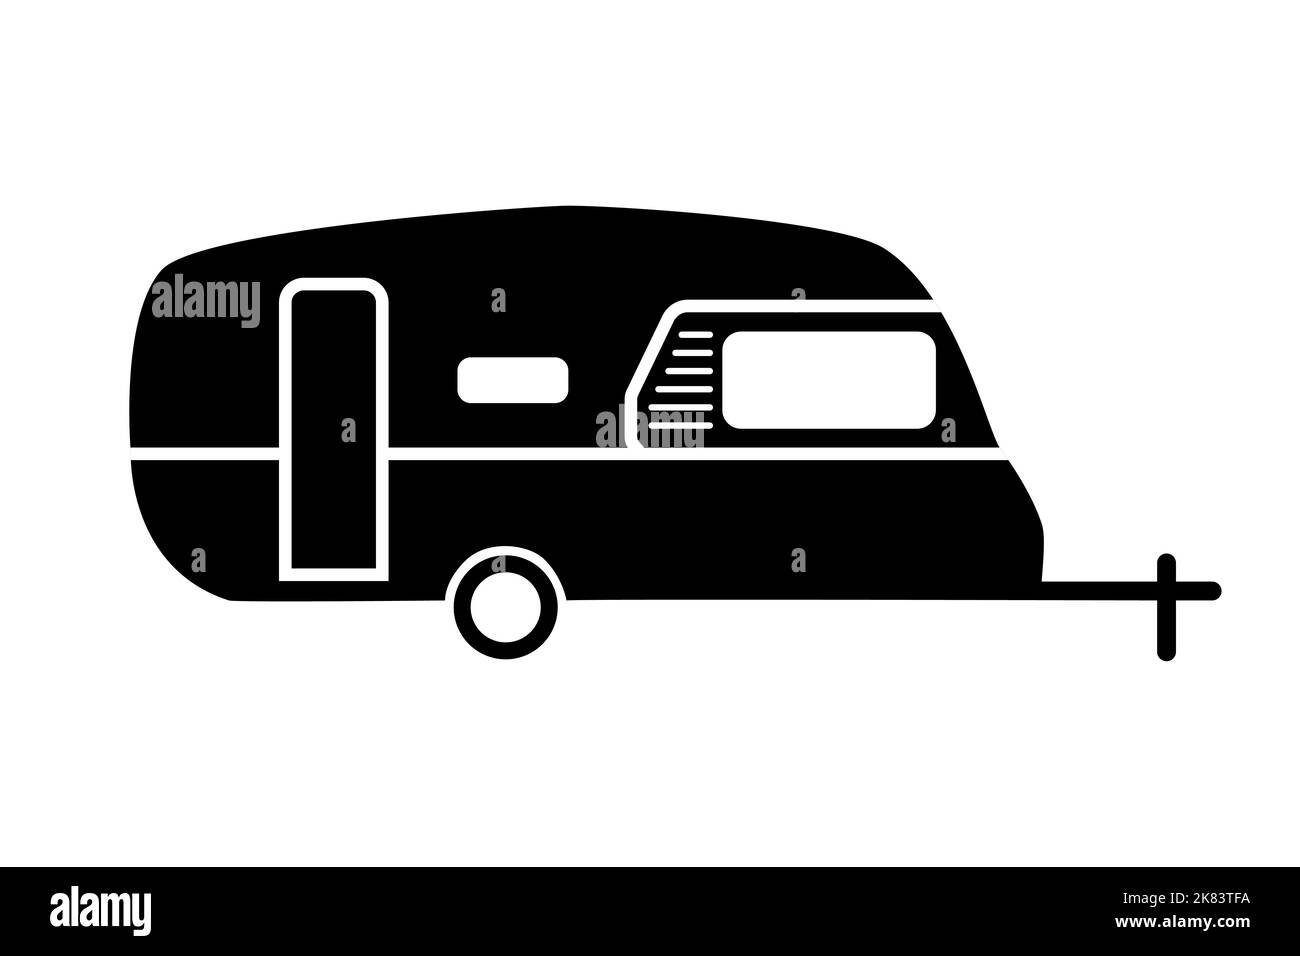 Travel trailer icon. Caravan camper. Stock Vector